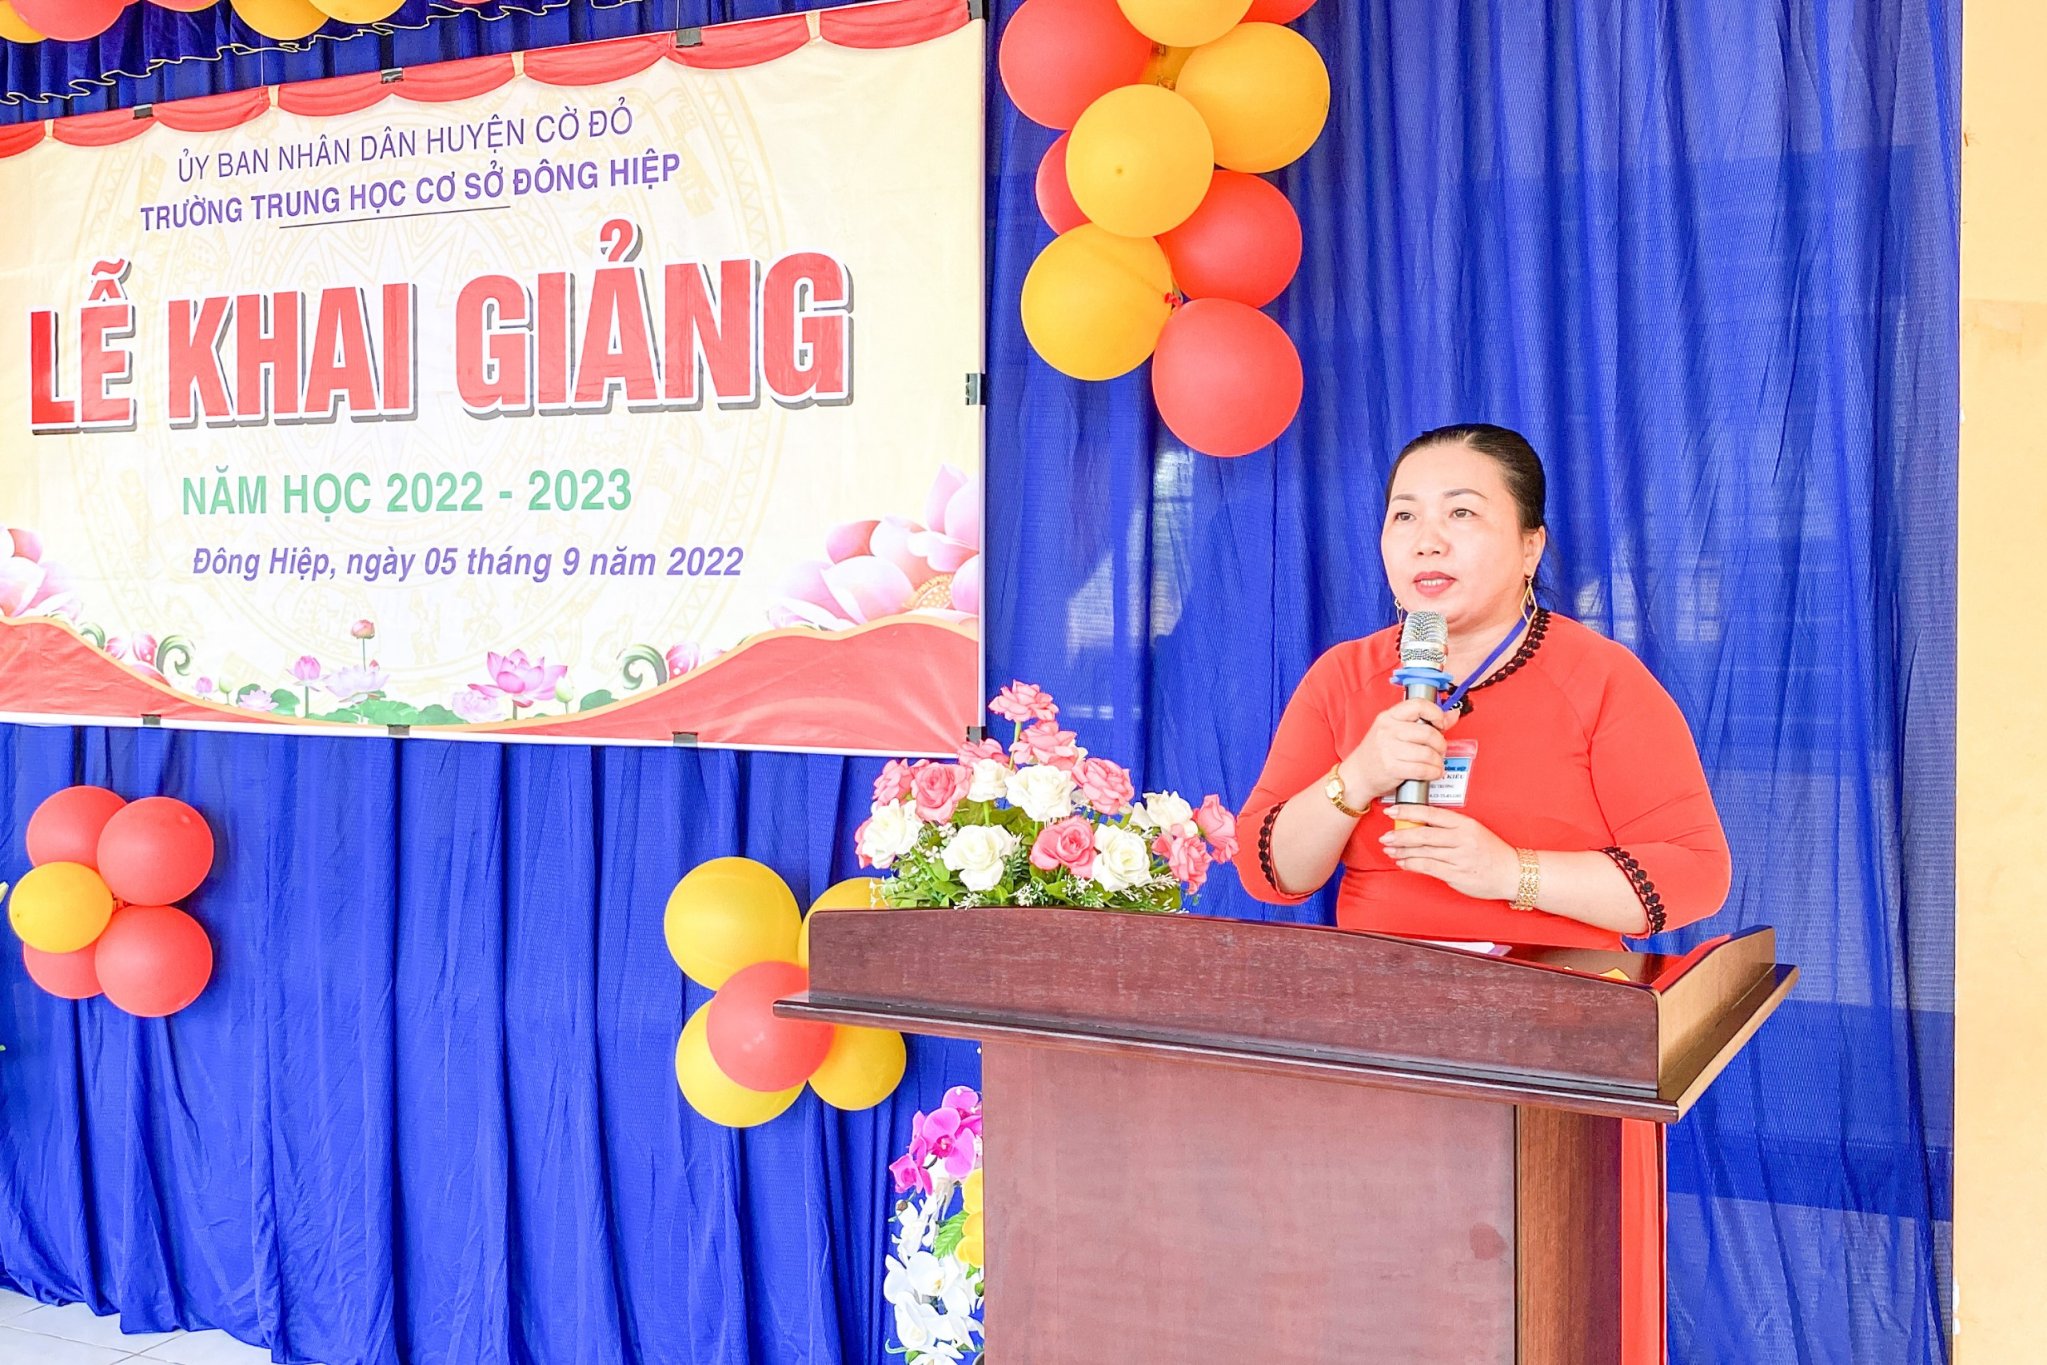 Cô Trần Thị Kiều - Phó Hiệu trưởng Trường THCS Đông Hiệp phát biểu chào mừng lễ khai giảng.